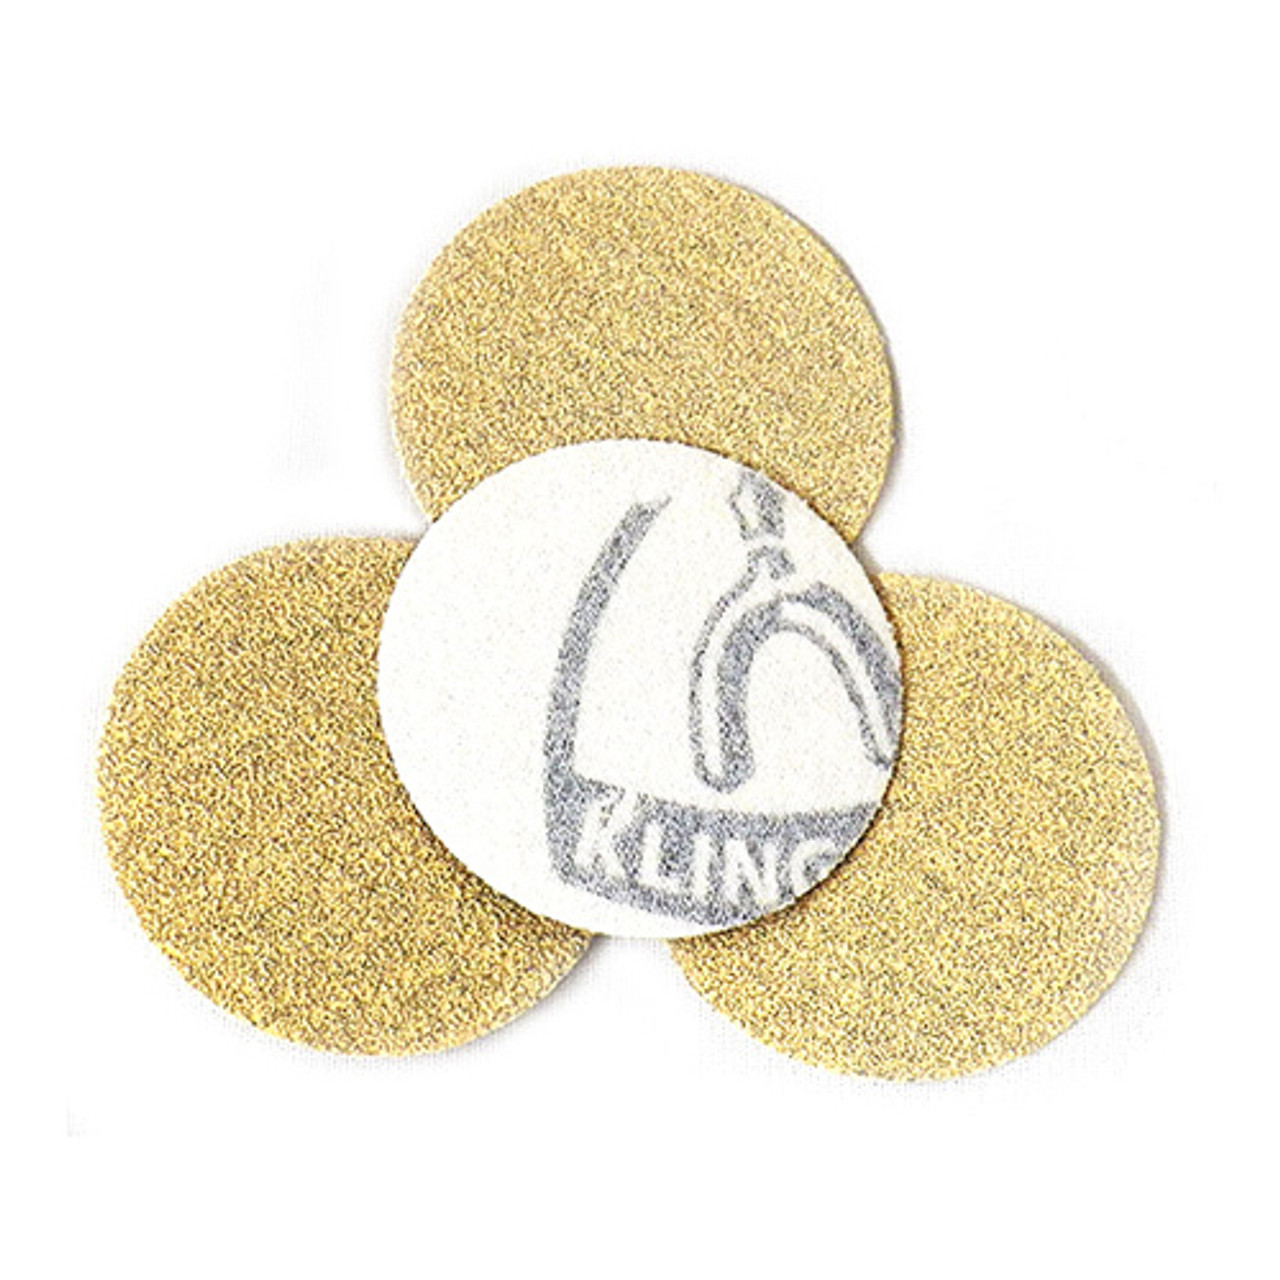 Klingspor Abrasives Stearated Aluminum Oxide, 2" Hook & Loop Discs, 100 Grit, 10pk